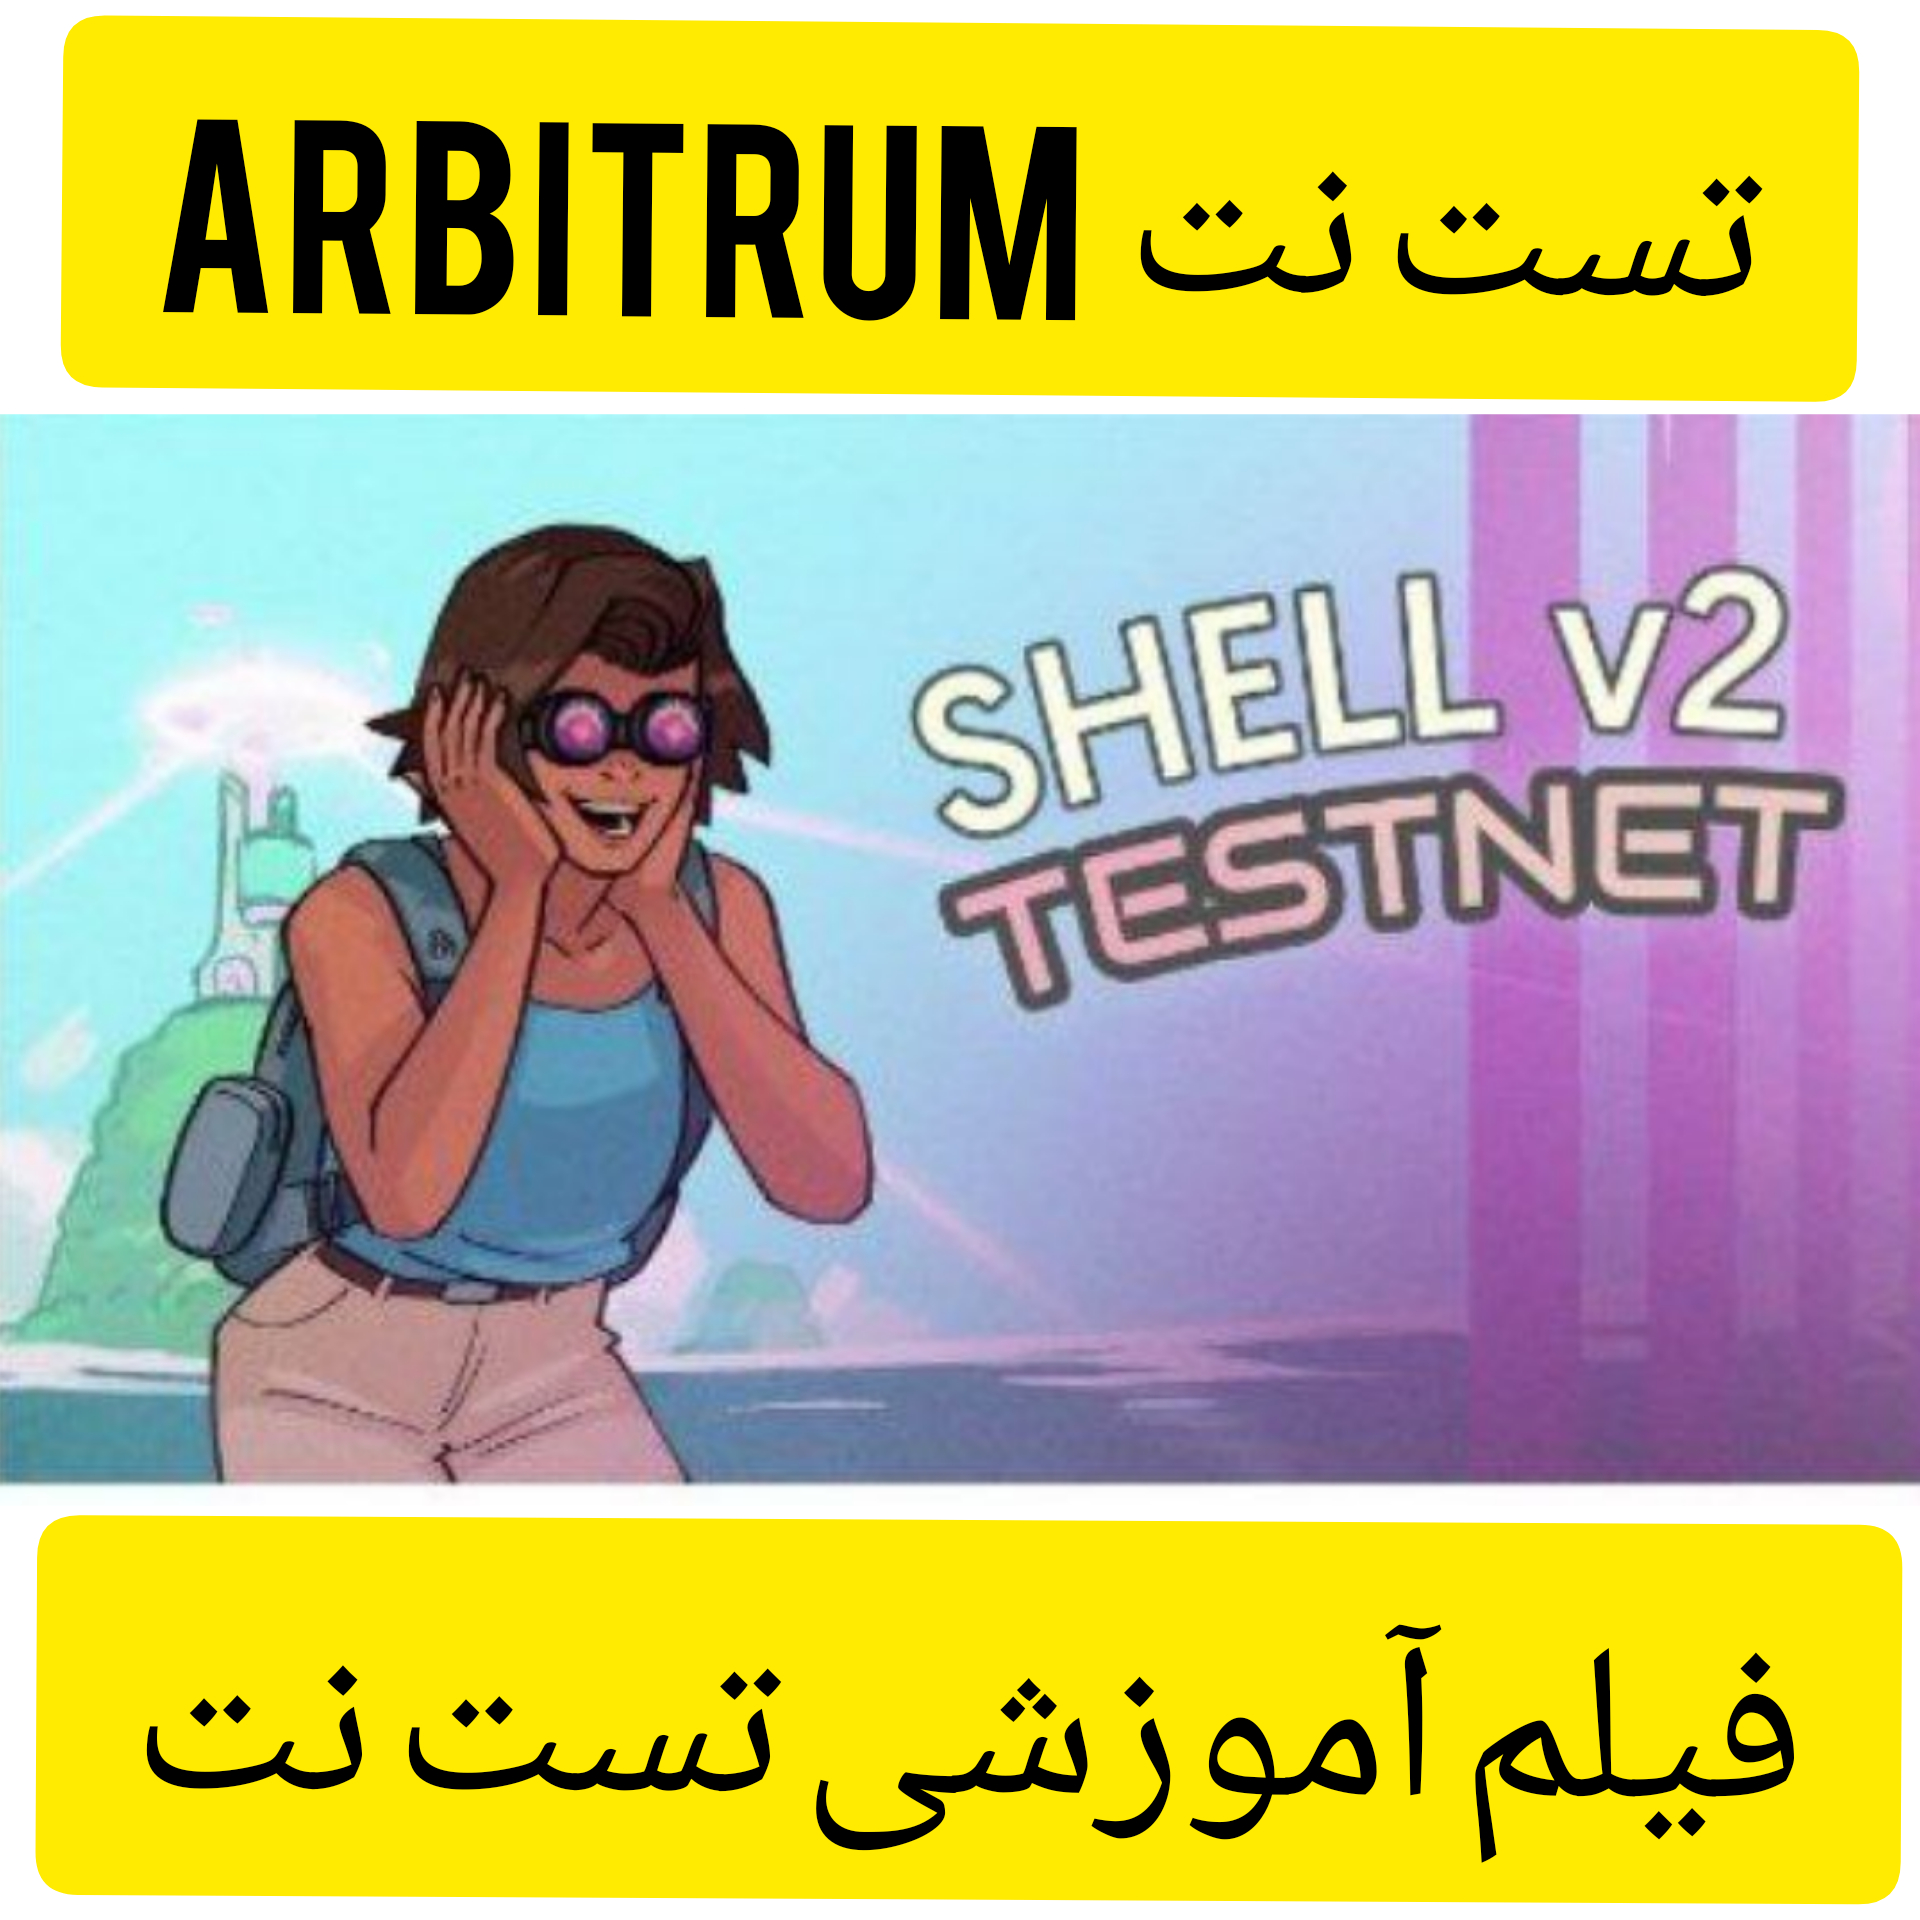 تست نت Shell v2 در شبکه ی آربیتروم